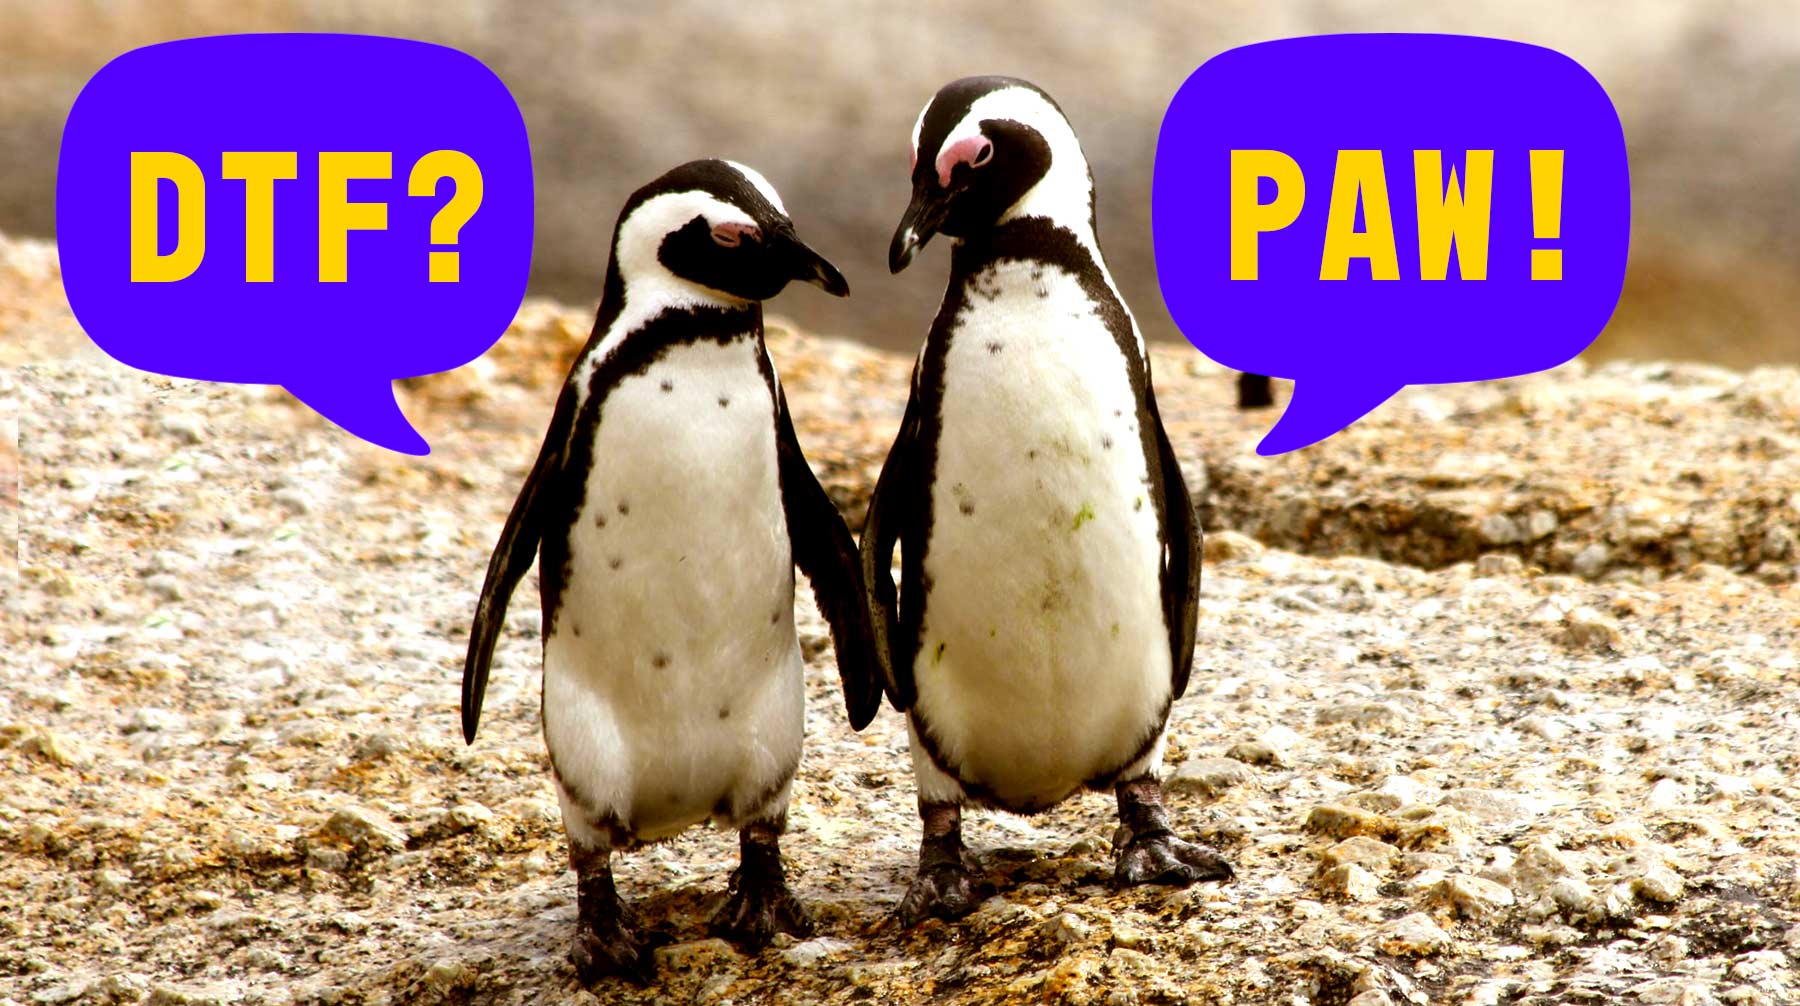 Två pingviner som går bredvid varandra. En pingvin frågar ”DTF?” och den andra svarar ”PAW!”.